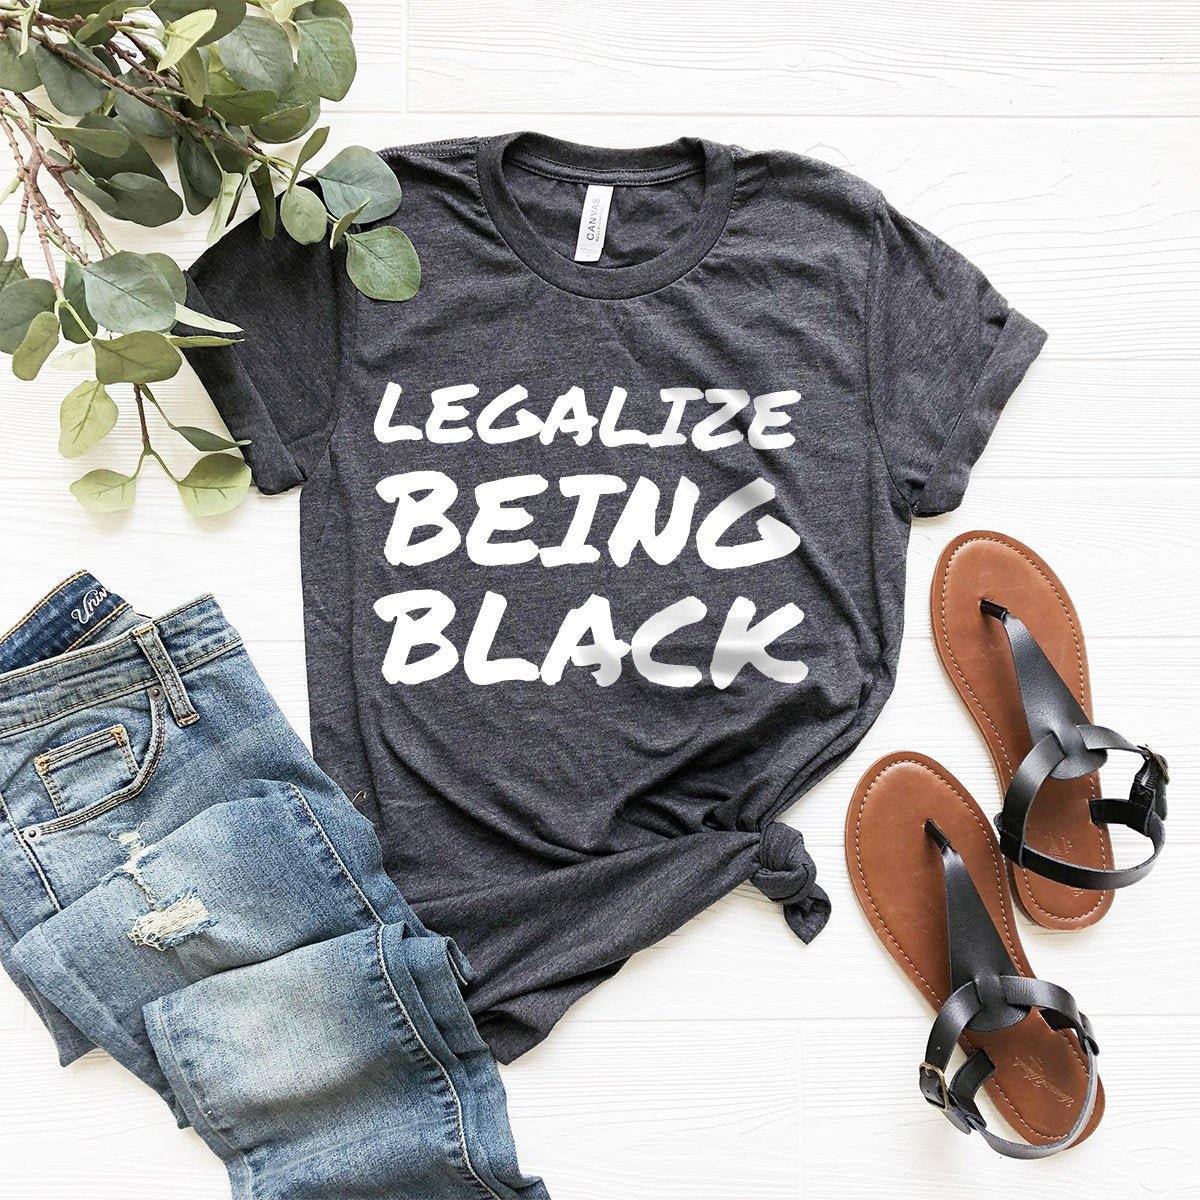 Black History T-Shirt, Black Pride Shirt, Legalize Being Black Tee, Justice For Black Shirt, Black Lives Matter Tee, Black Power Shirt - Fastdeliverytees.com